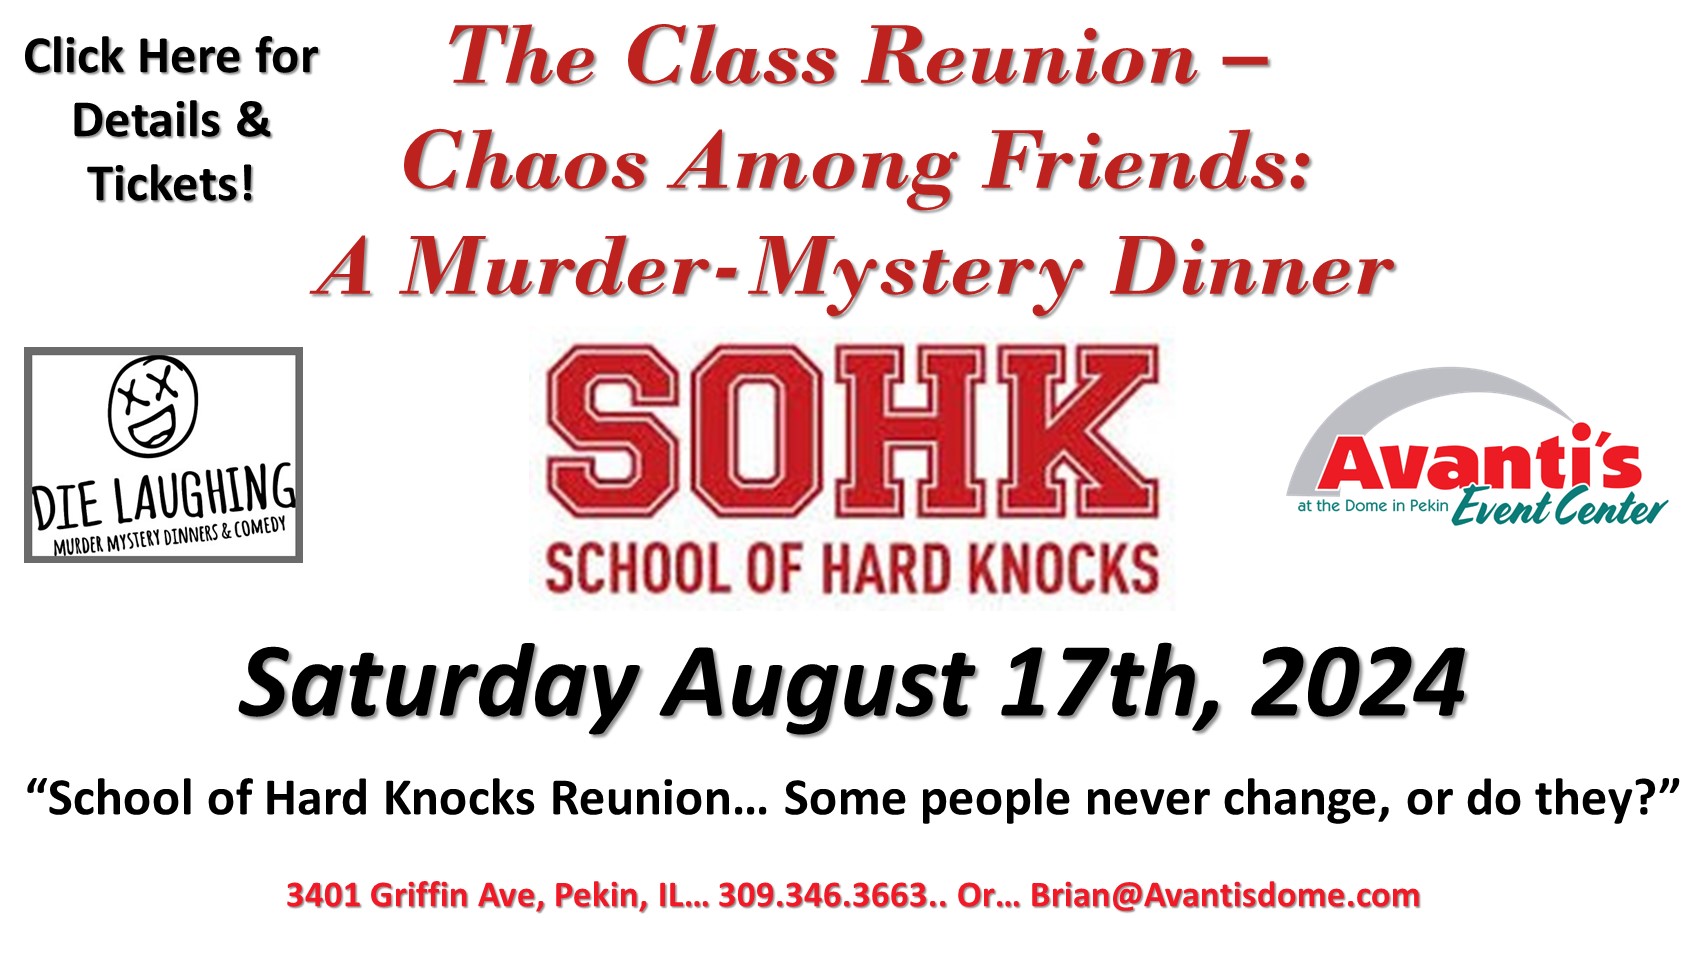 The Class Reunion - Chaos Among Friends: A Murder-Mystery Dinner